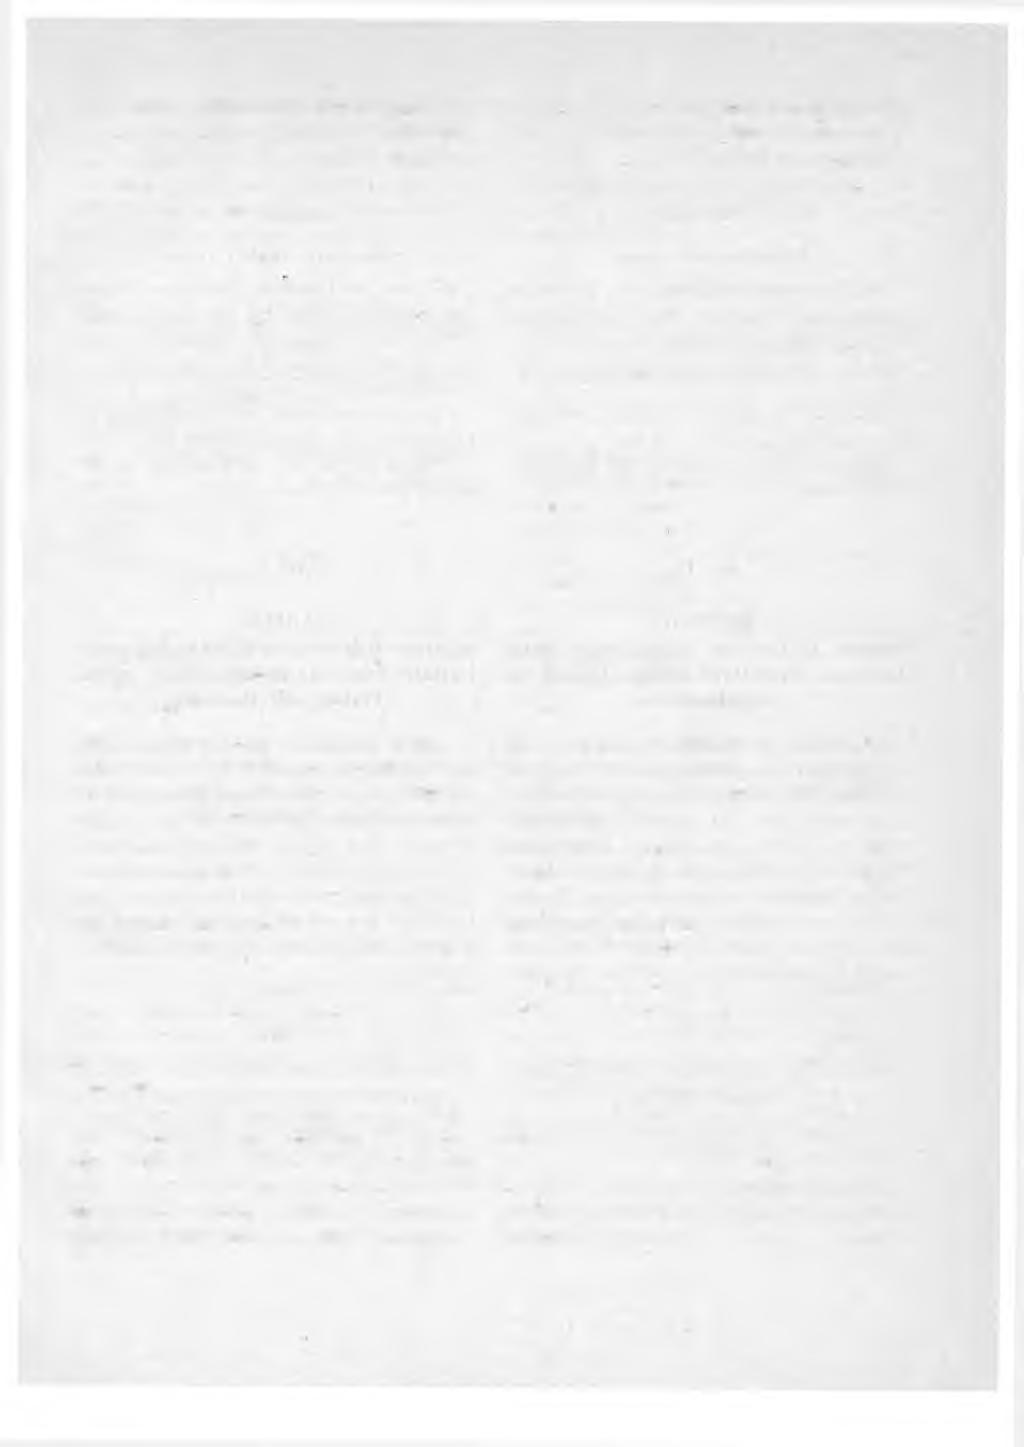 3 1922 allekirjoitetun sekä 1/11 päivänä lokakuuta 1924 ja 23 päivänä marraskuuta 1925 tarkistetun Suomen ja Norjan välistä postinvaihtoa koskevan sopimuksen 2 ja 3 artikla saavat tämän elokuun 1